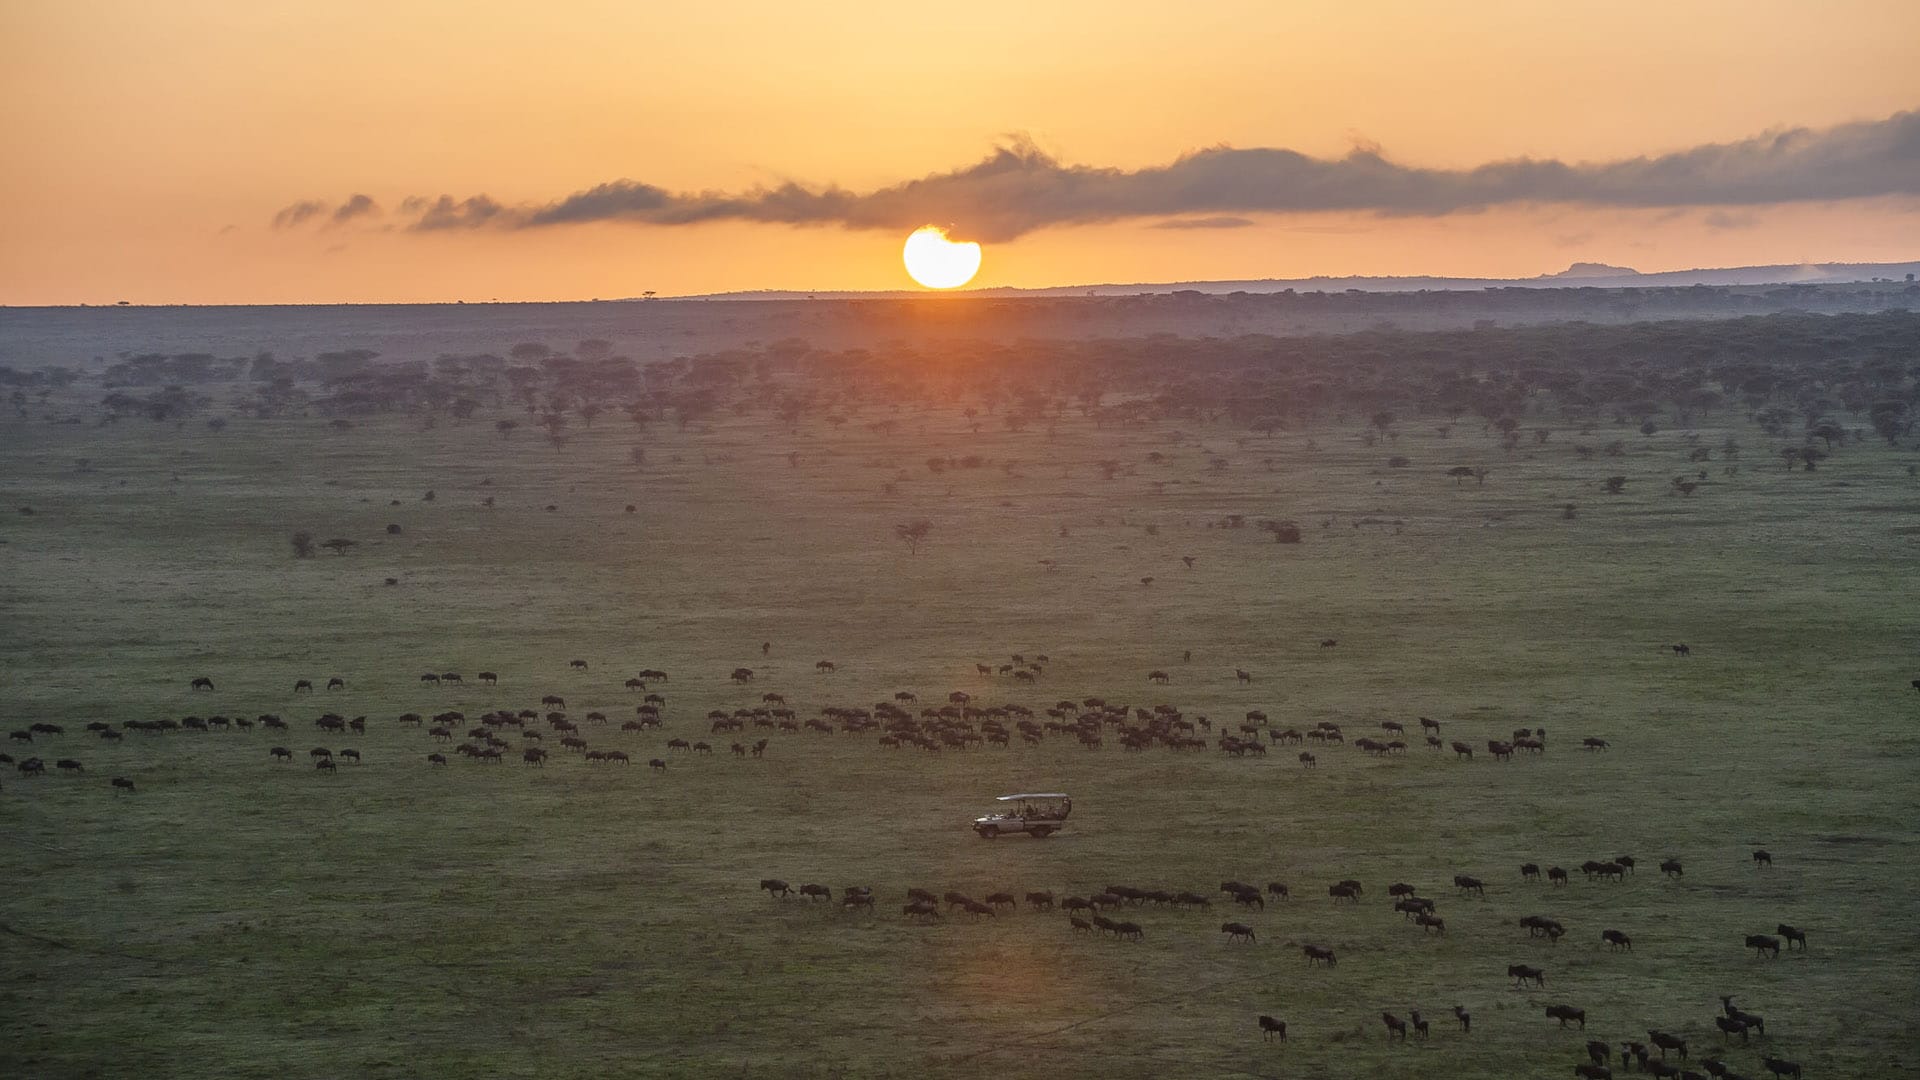 Sunset over Serengeti